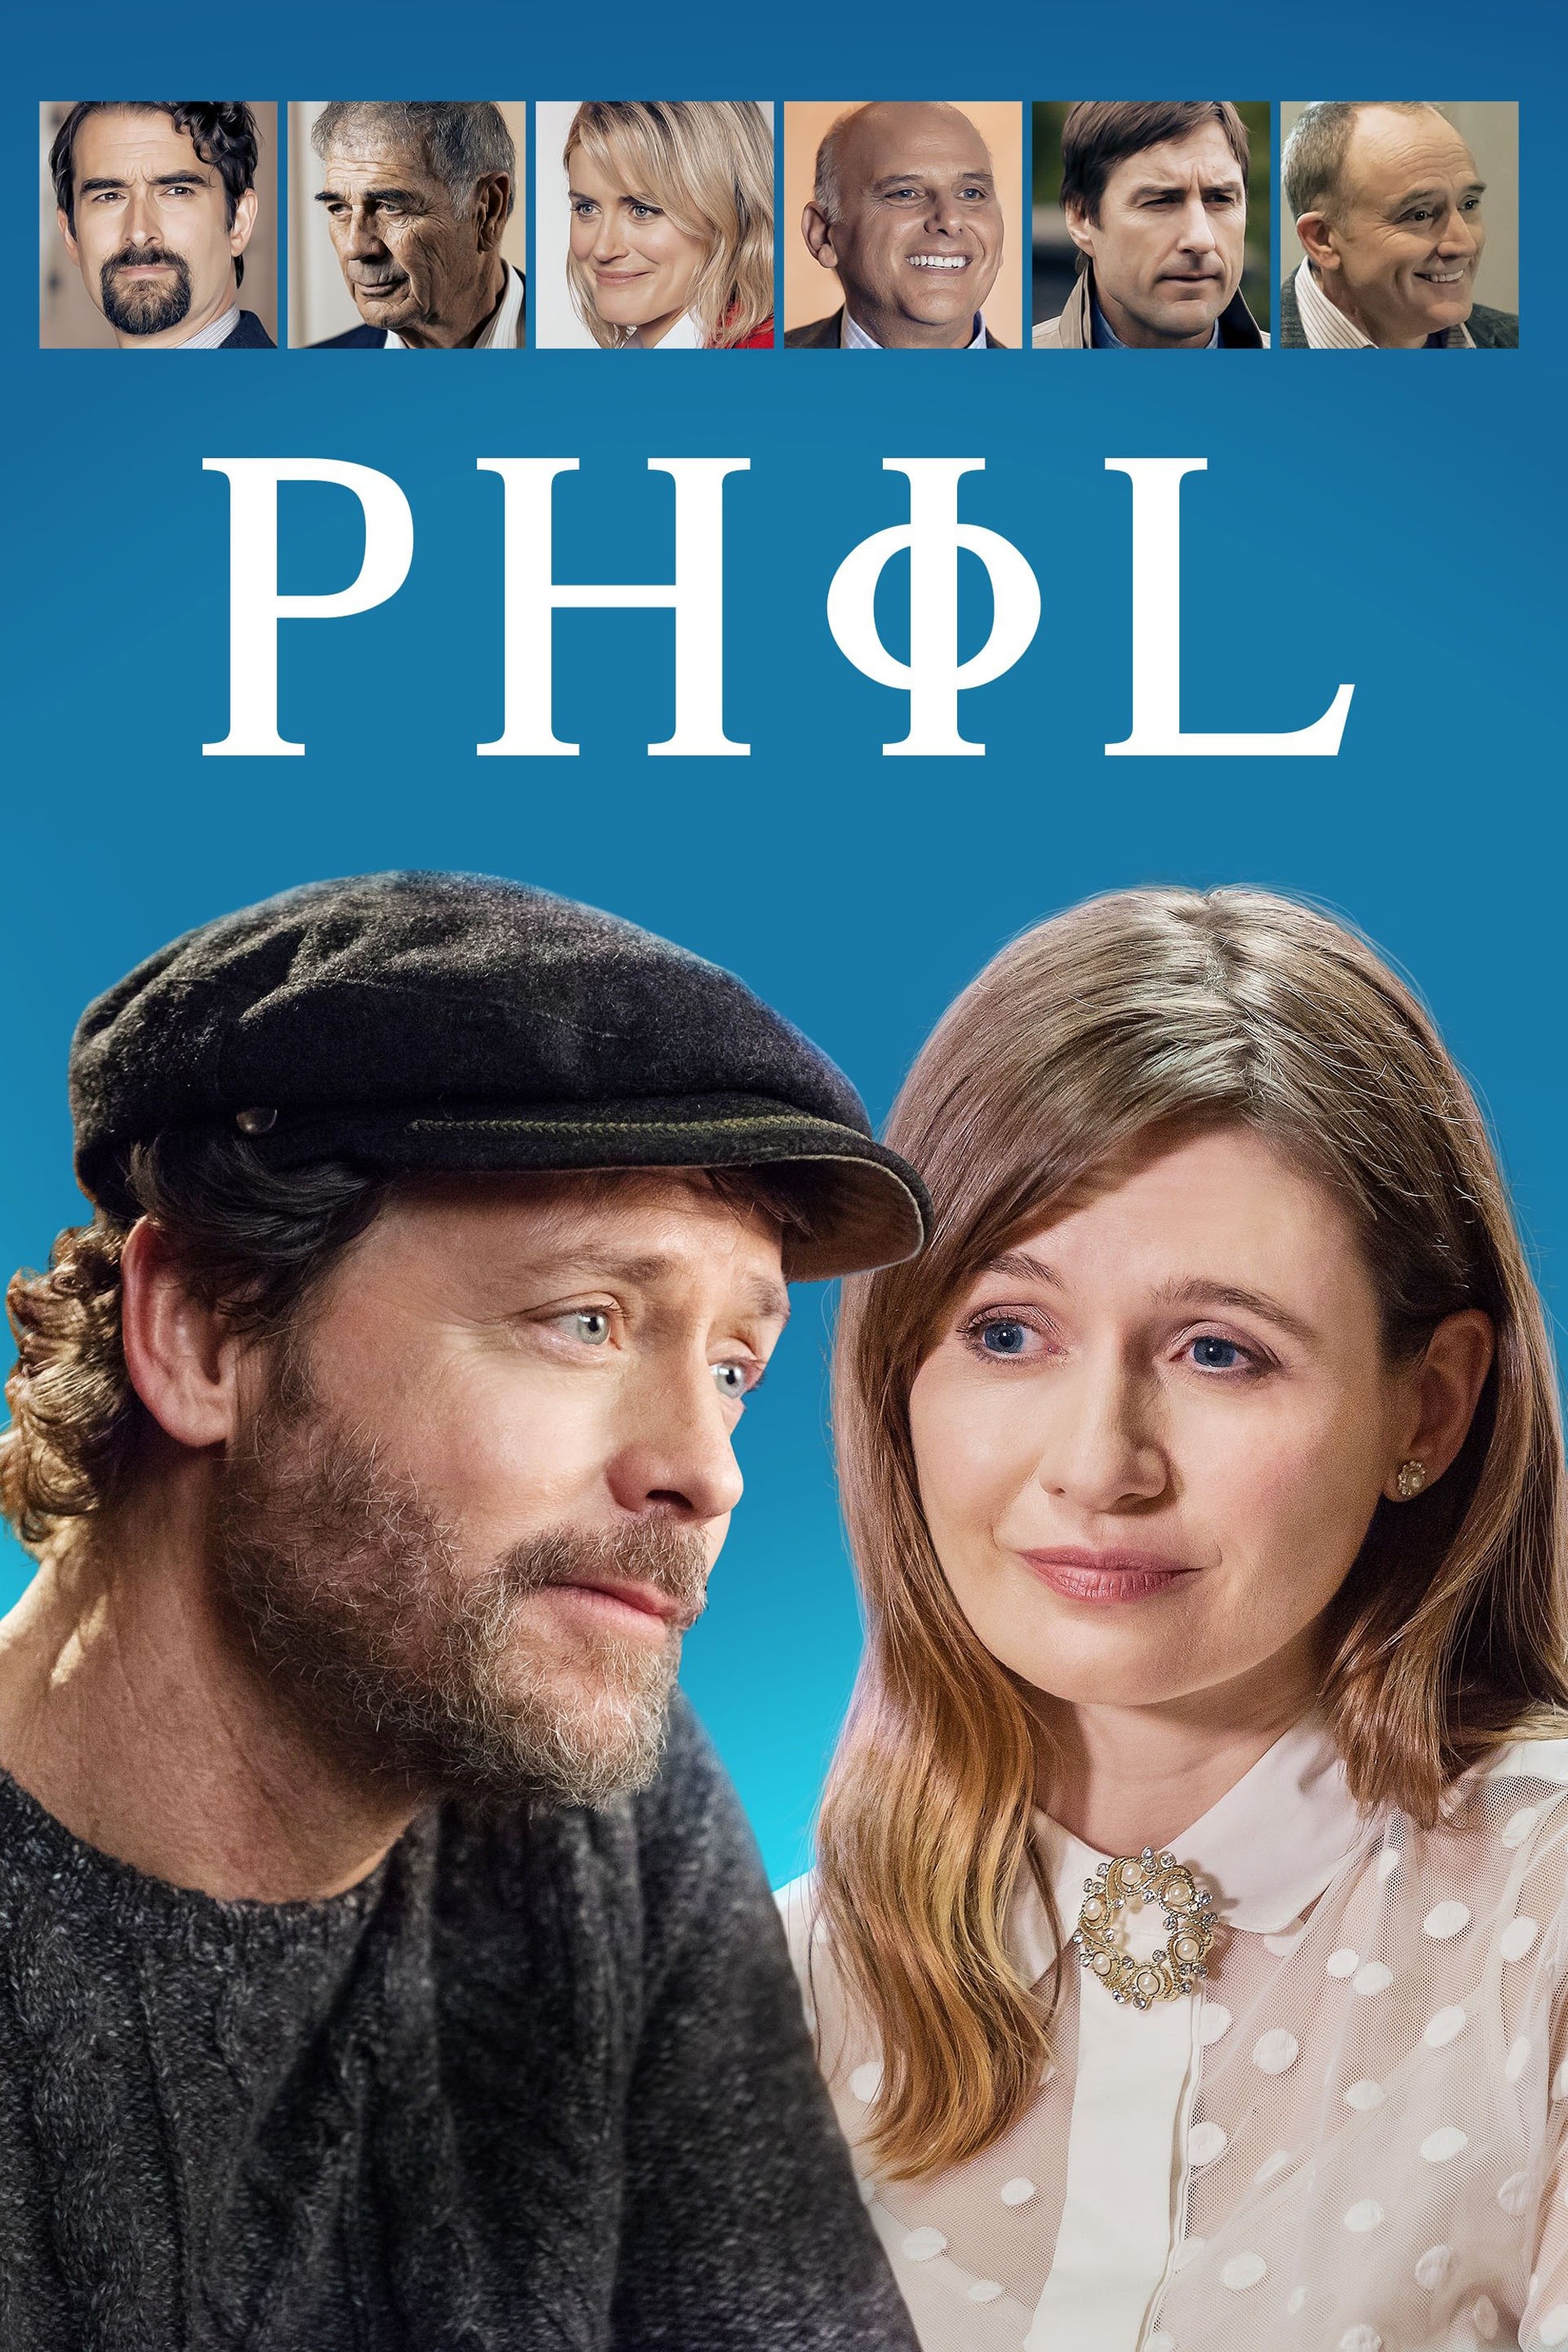 PHIL / La nueva filosofía de Phil